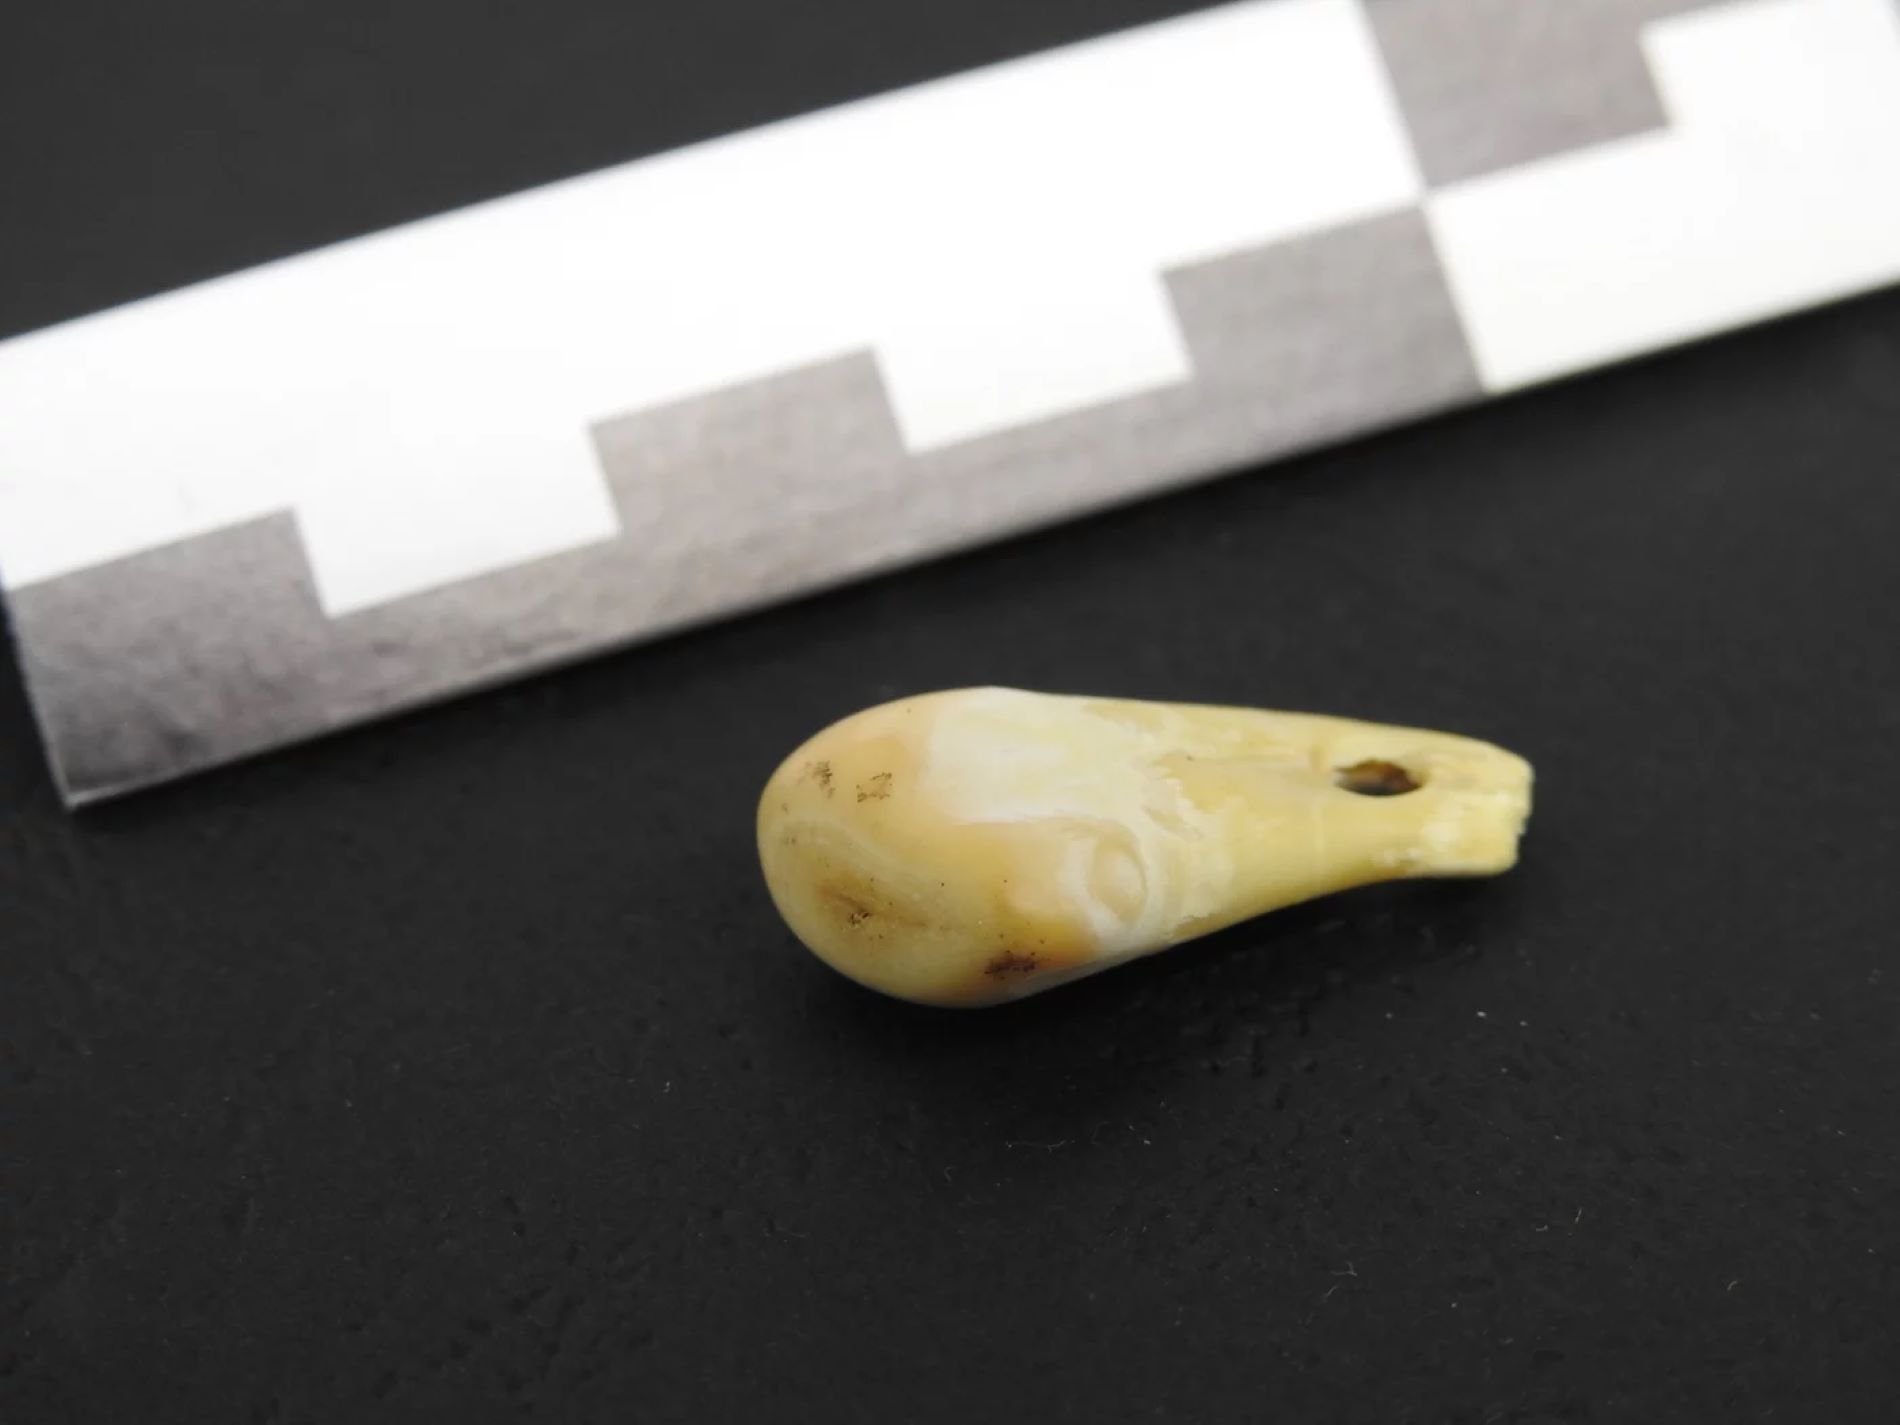 Recuperado el ADN de una mujer en un collar de hace 20.000 años: nueva técnica revolucionaria